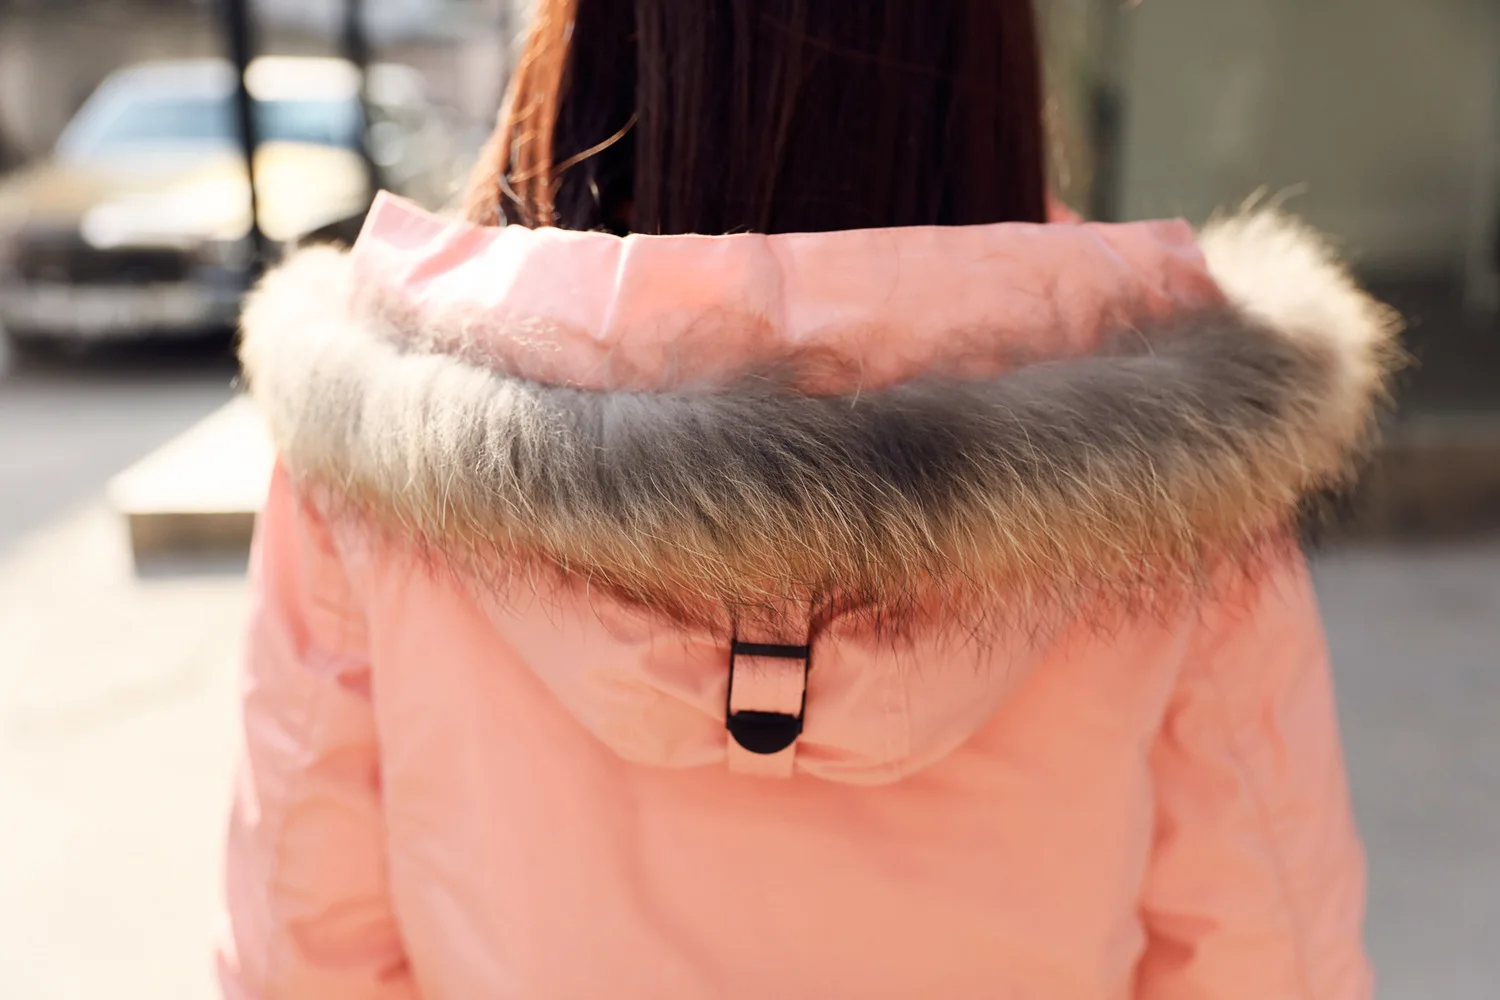 AYUNSUE, зимняя женская куртка, свободная парка, большой размер, военный, белый, розовый, куртка, корейский стиль, длинное пальто, женские парки, Mujer, KJ720